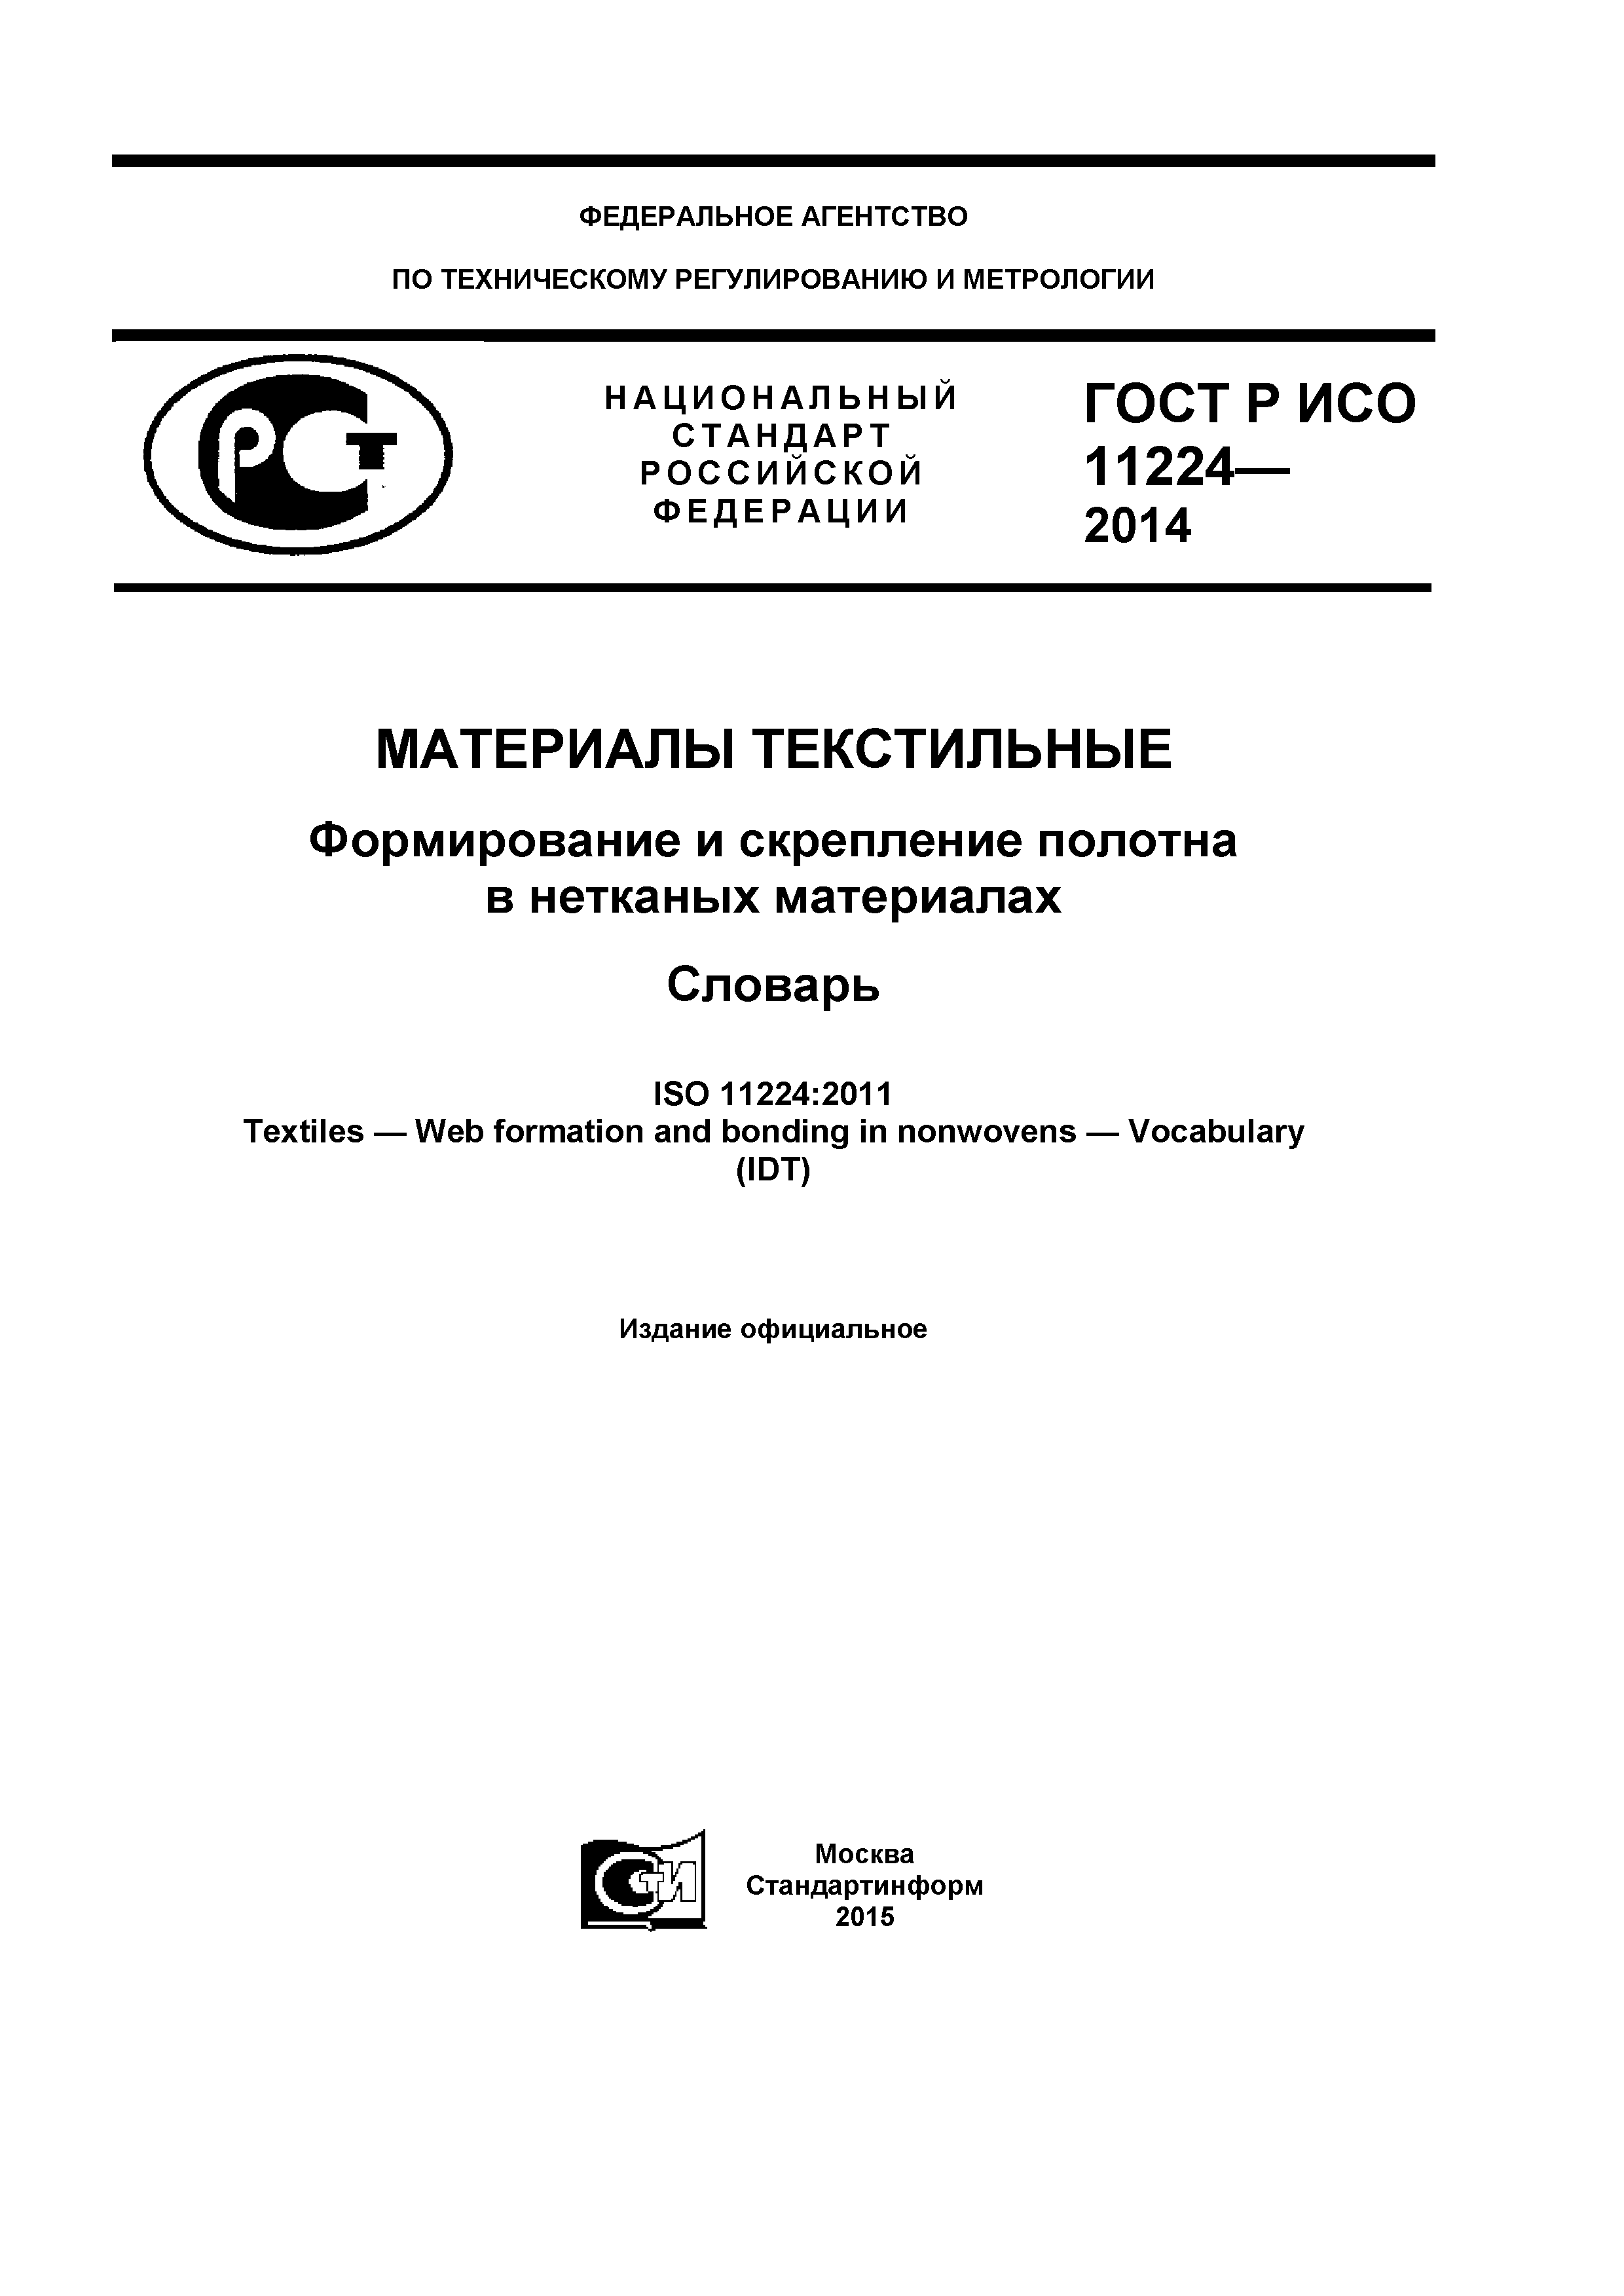 ГОСТ Р ИСО 11224-2014